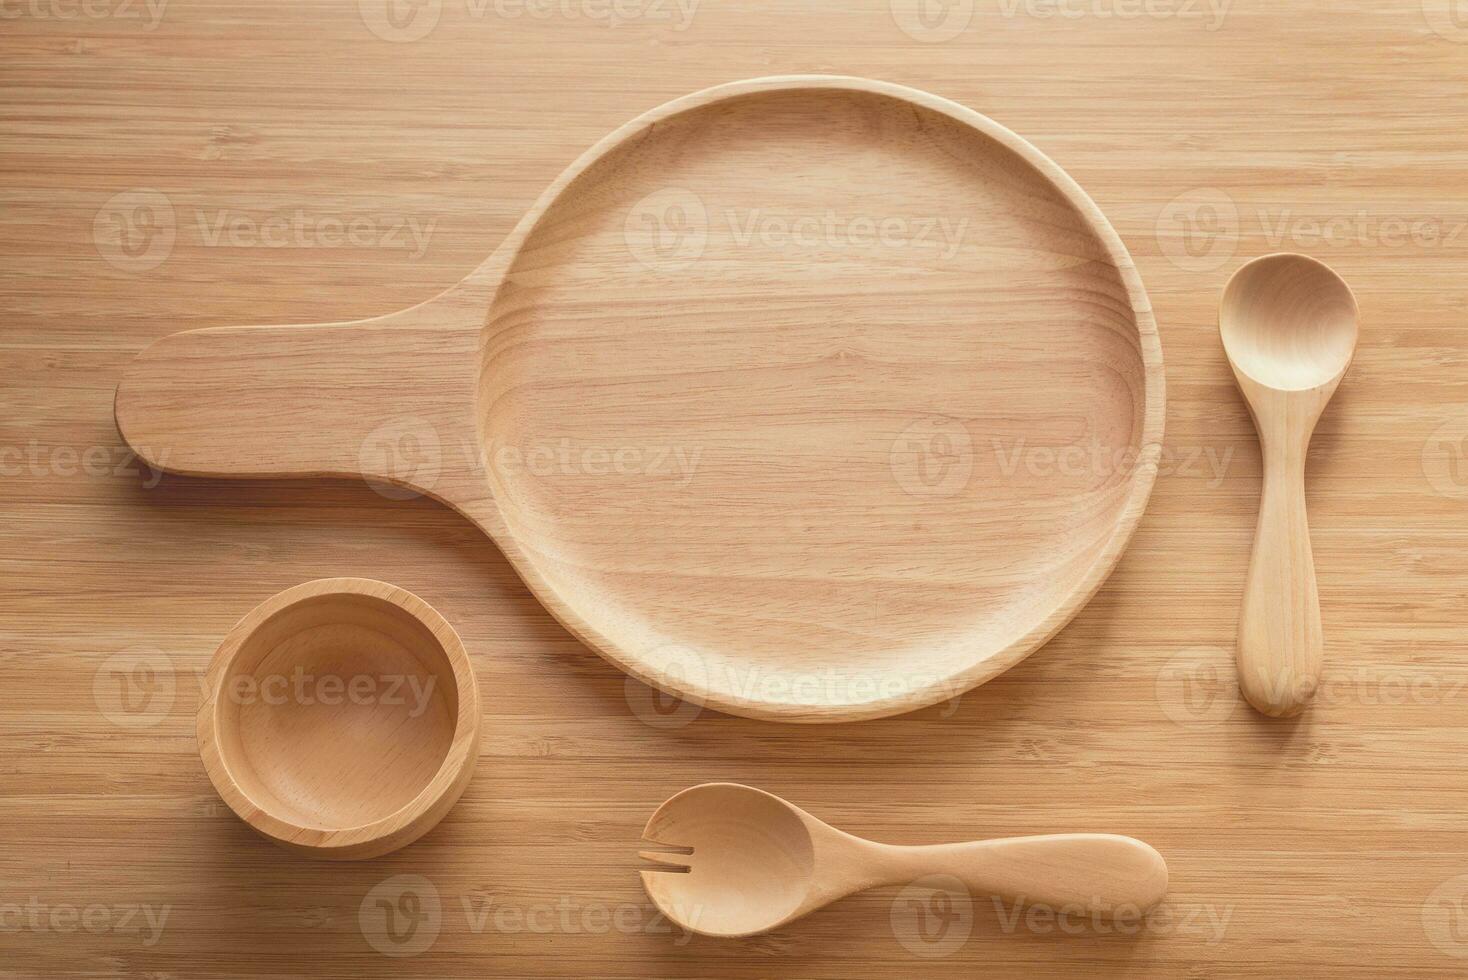 de madeira utensílios de cozinha utensílios conjunto do de madeira placa, garfo, colher em mesa foto